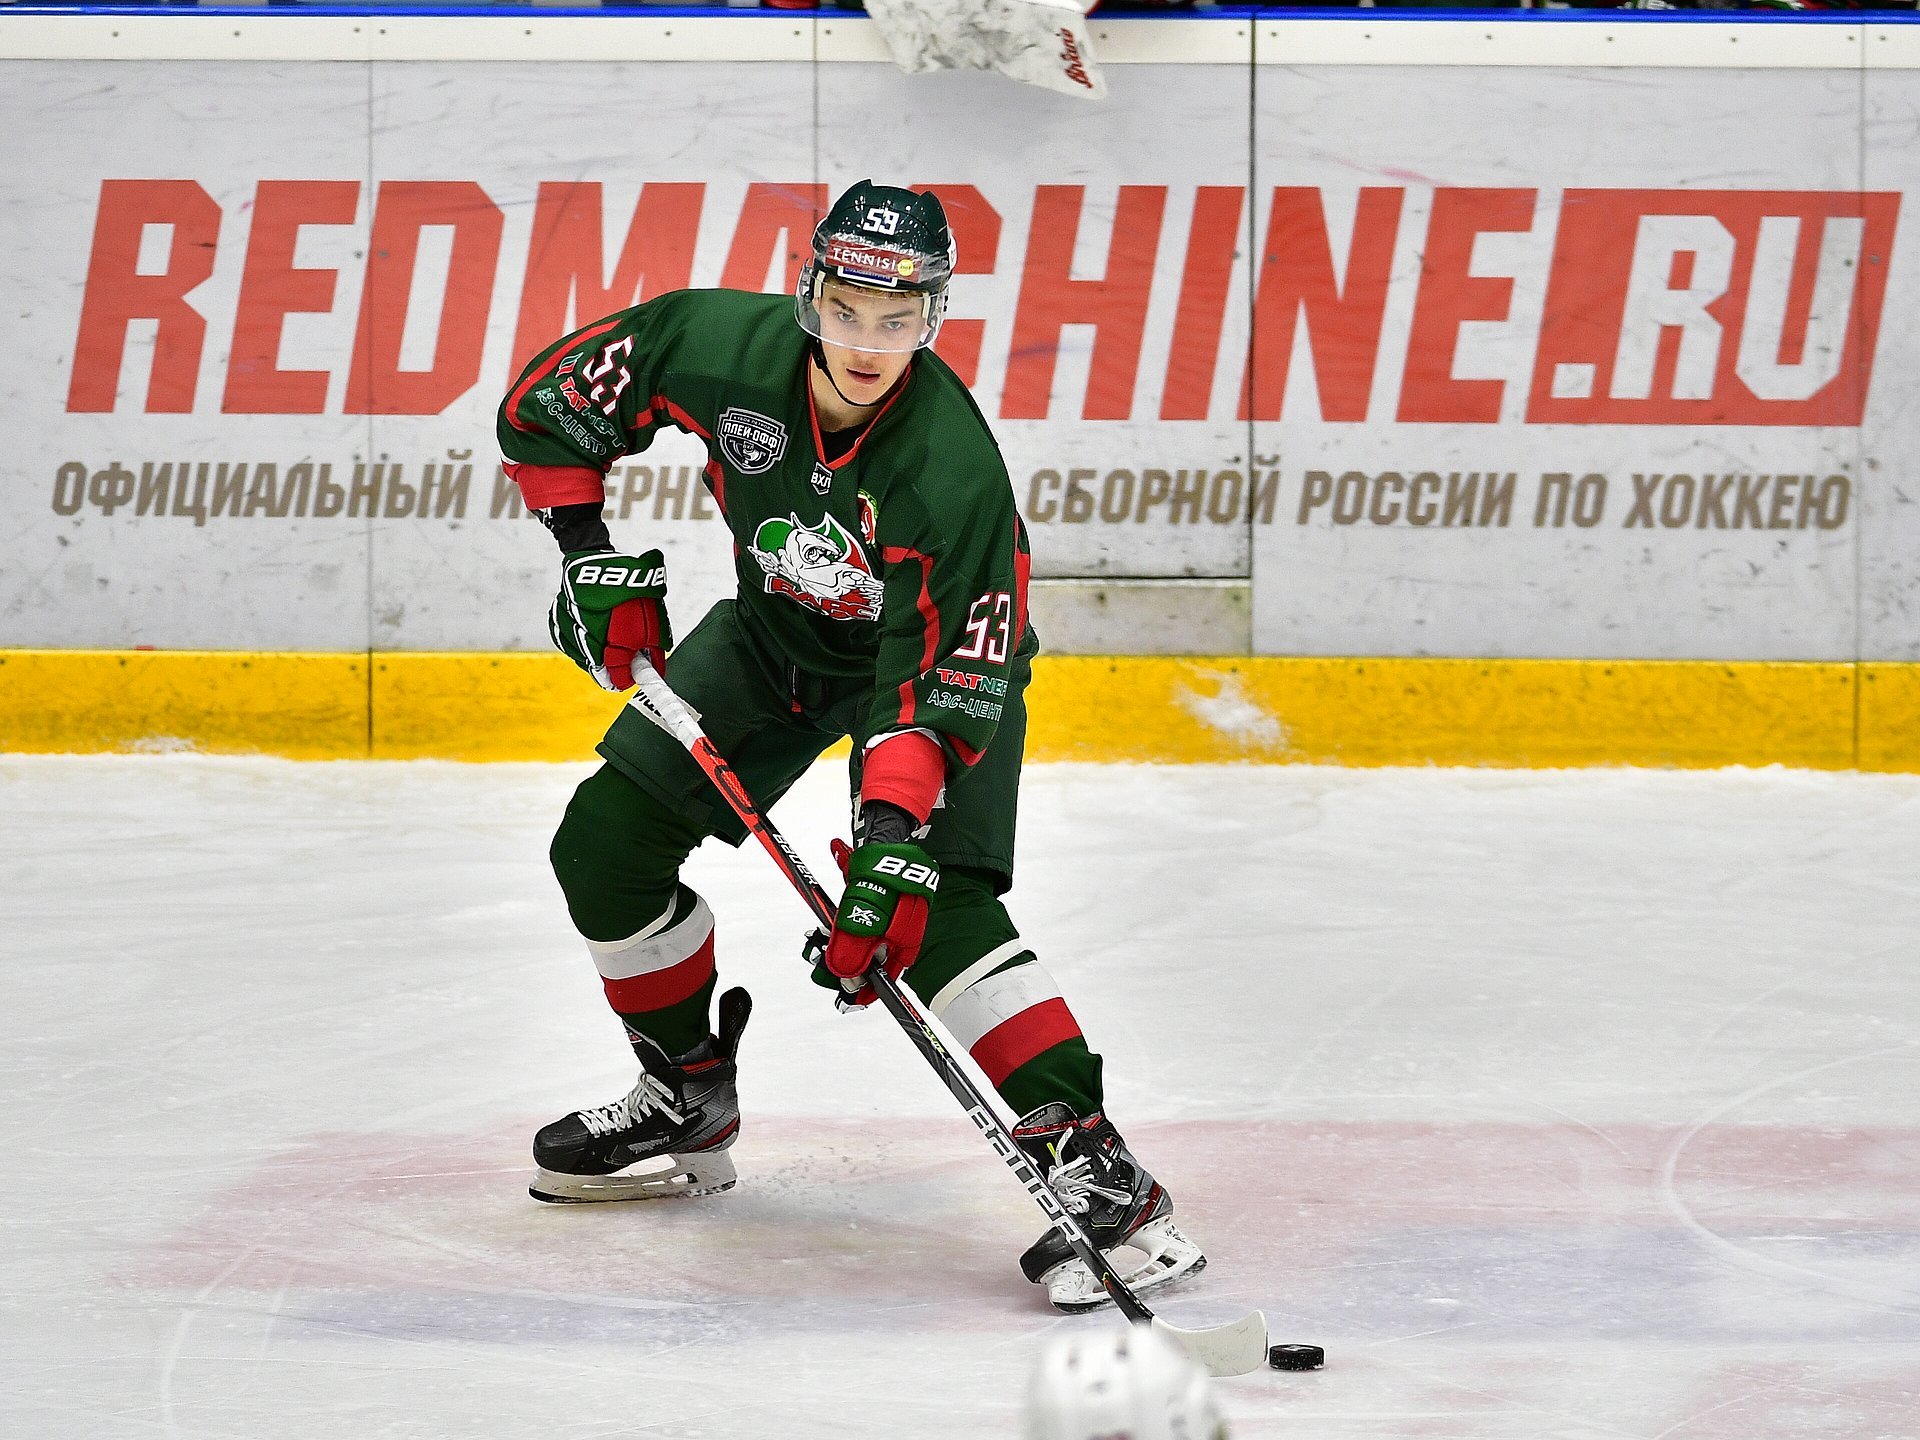 Хоккей Беларусь. Российские хоккеисты прибыли на просмотр в ХК "Витебск"